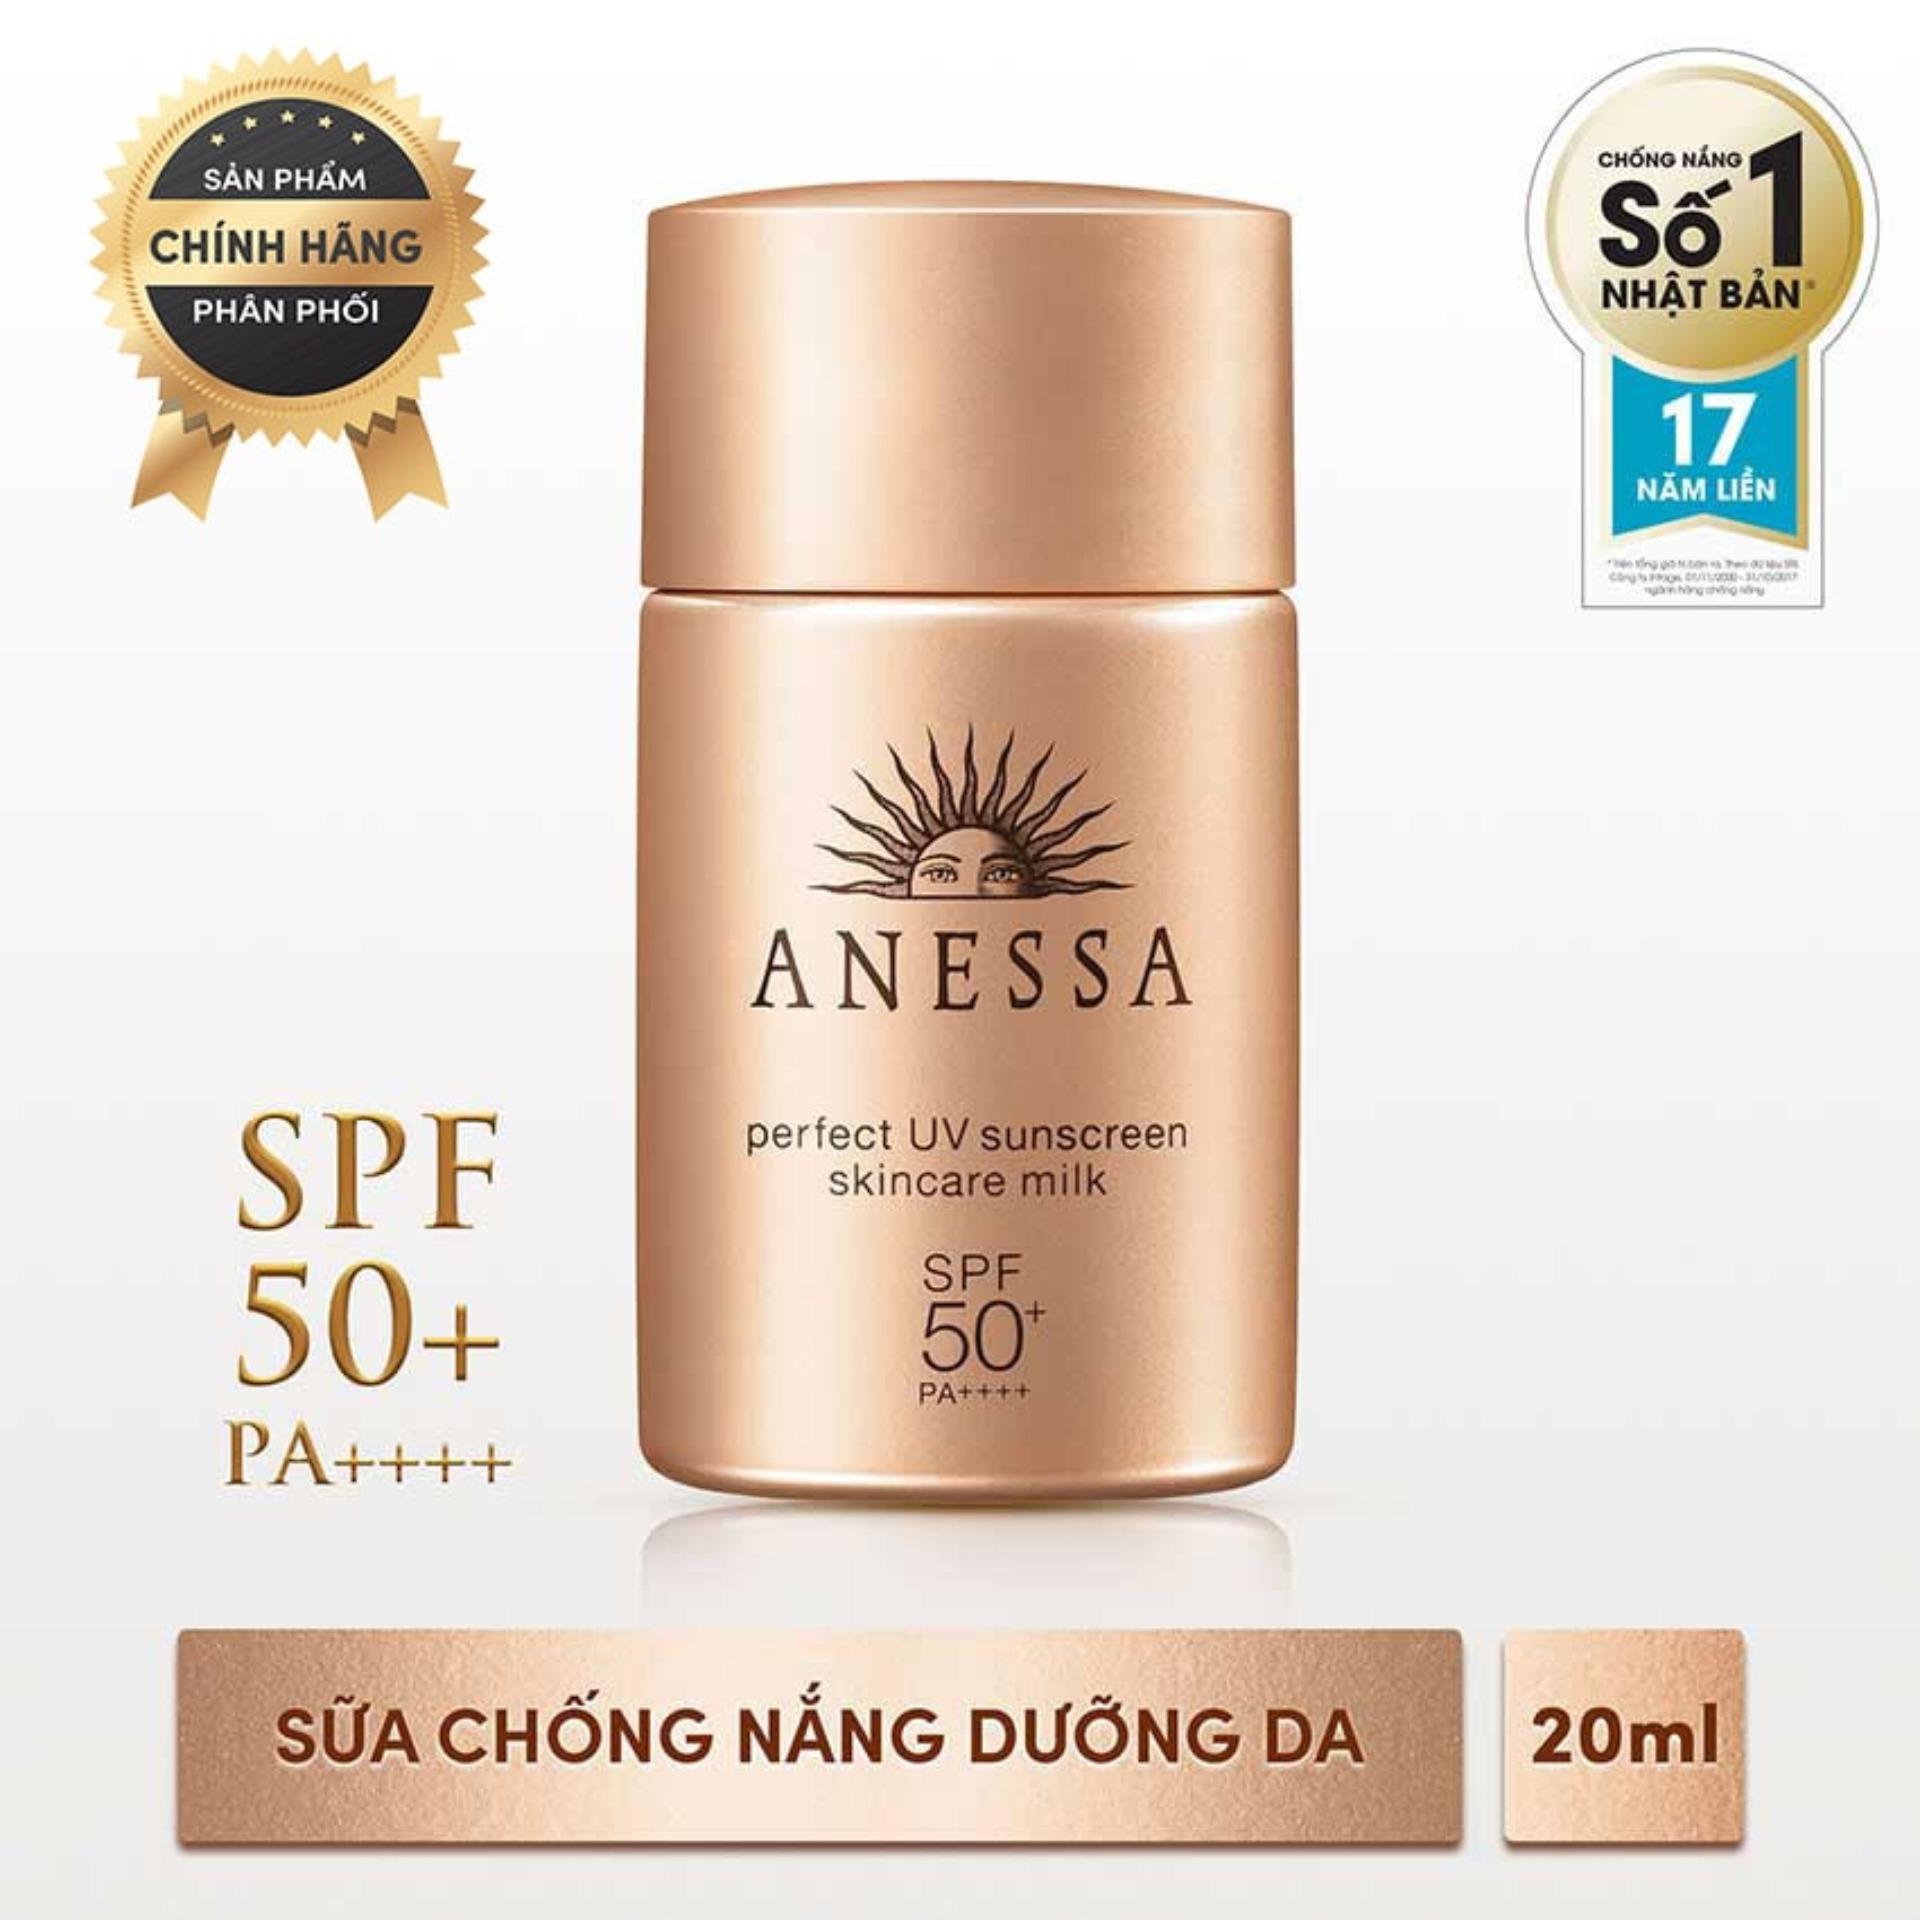 Sữa chống nắng bảo vệ hoàn hảo Anessa Perfect UV Sunscreen Skincare Milk - SPF 50+, PA++++ - 20ml